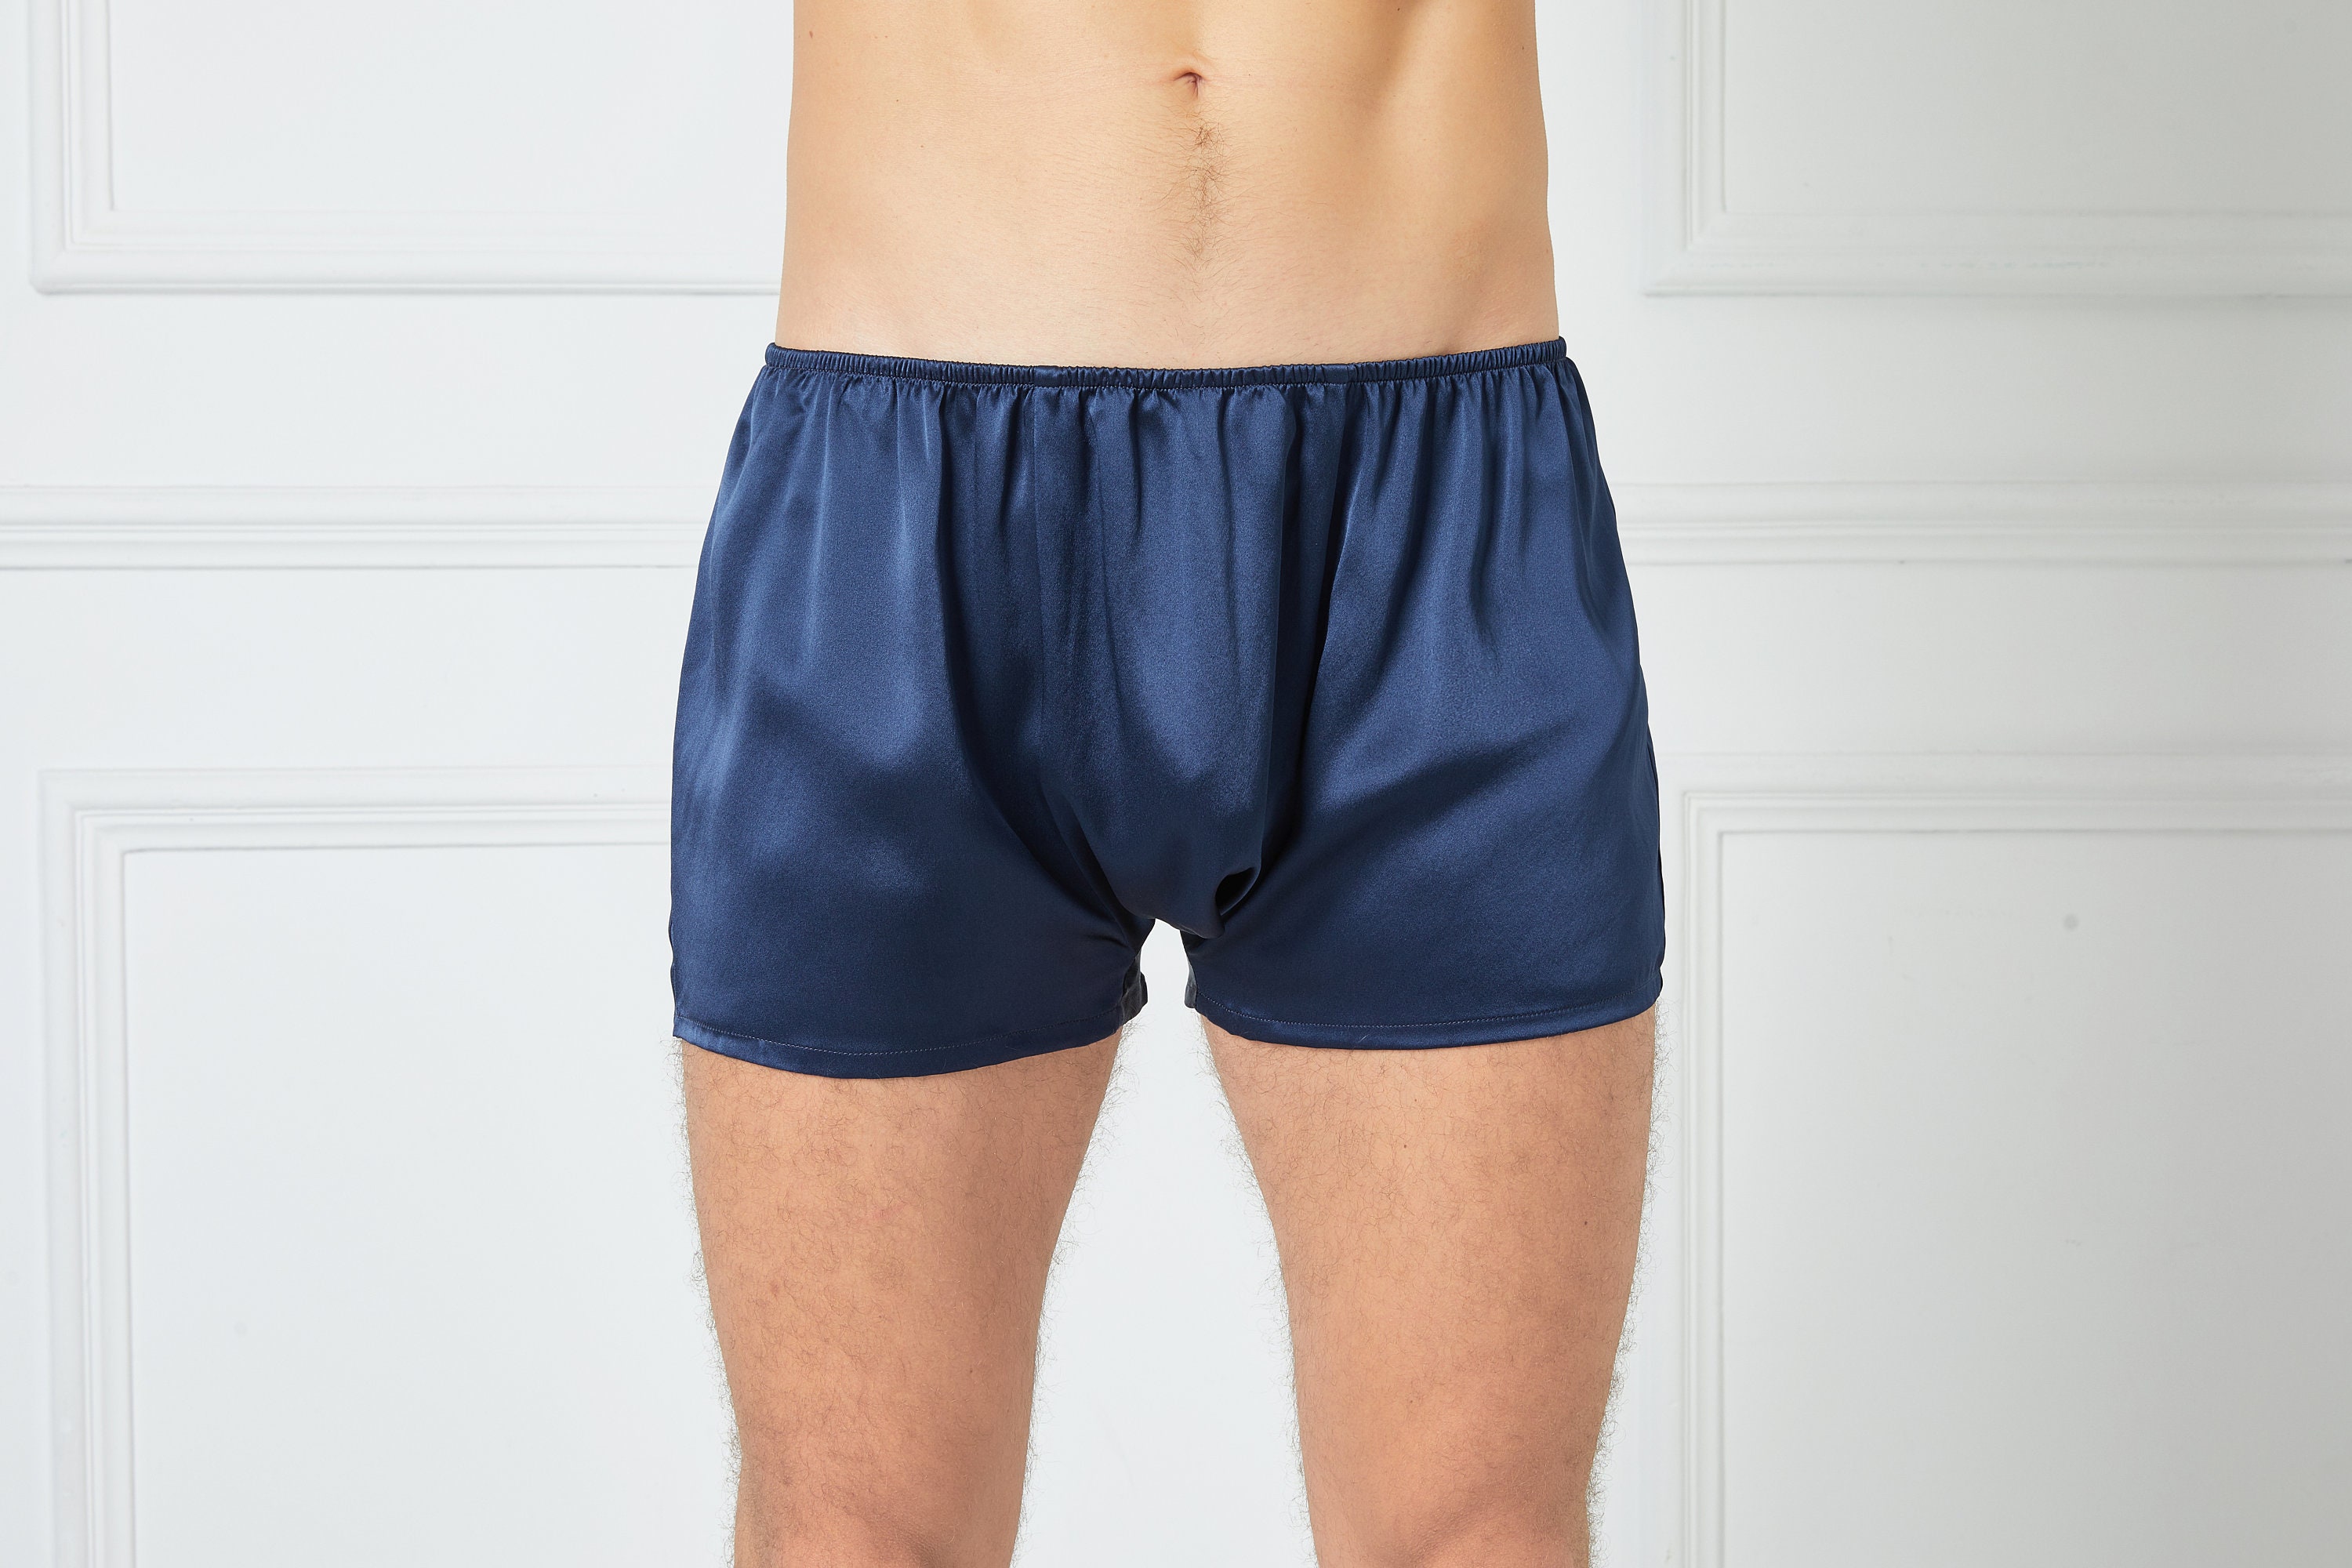 Silk Satin Briefs Men's Satin Underwear Blue Khaki Gift for Men